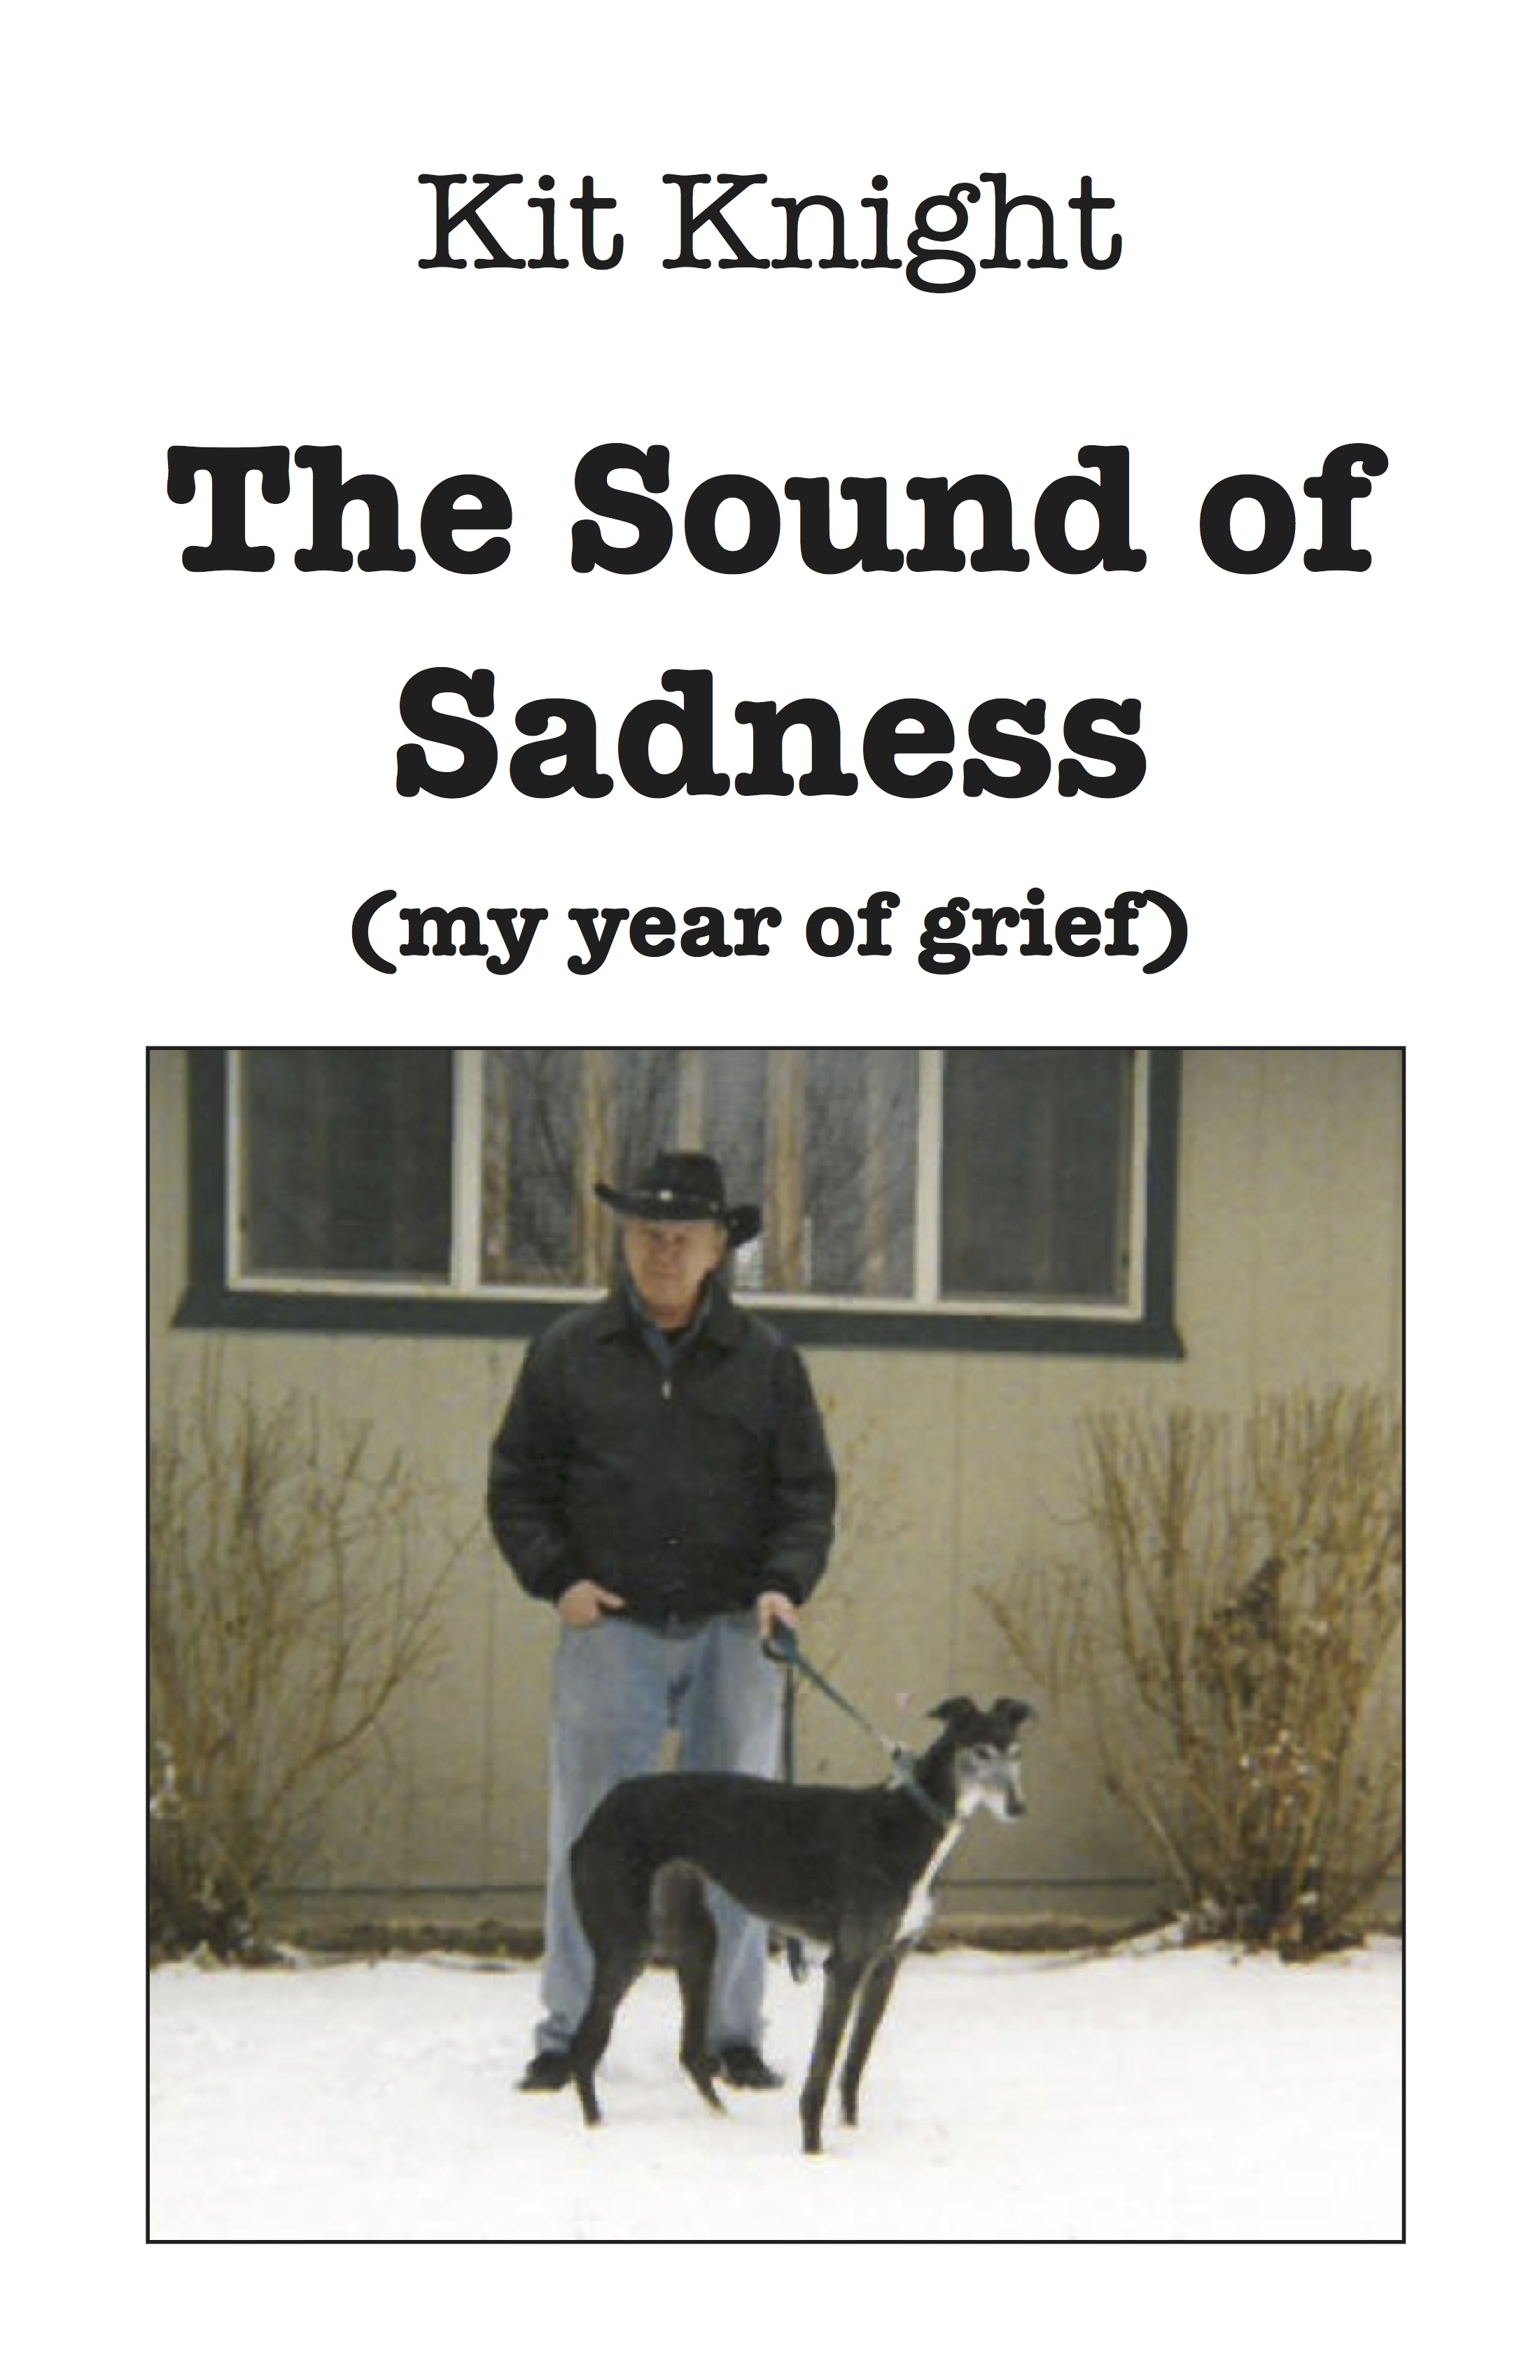 The Sound of Sadness by Kit Knight